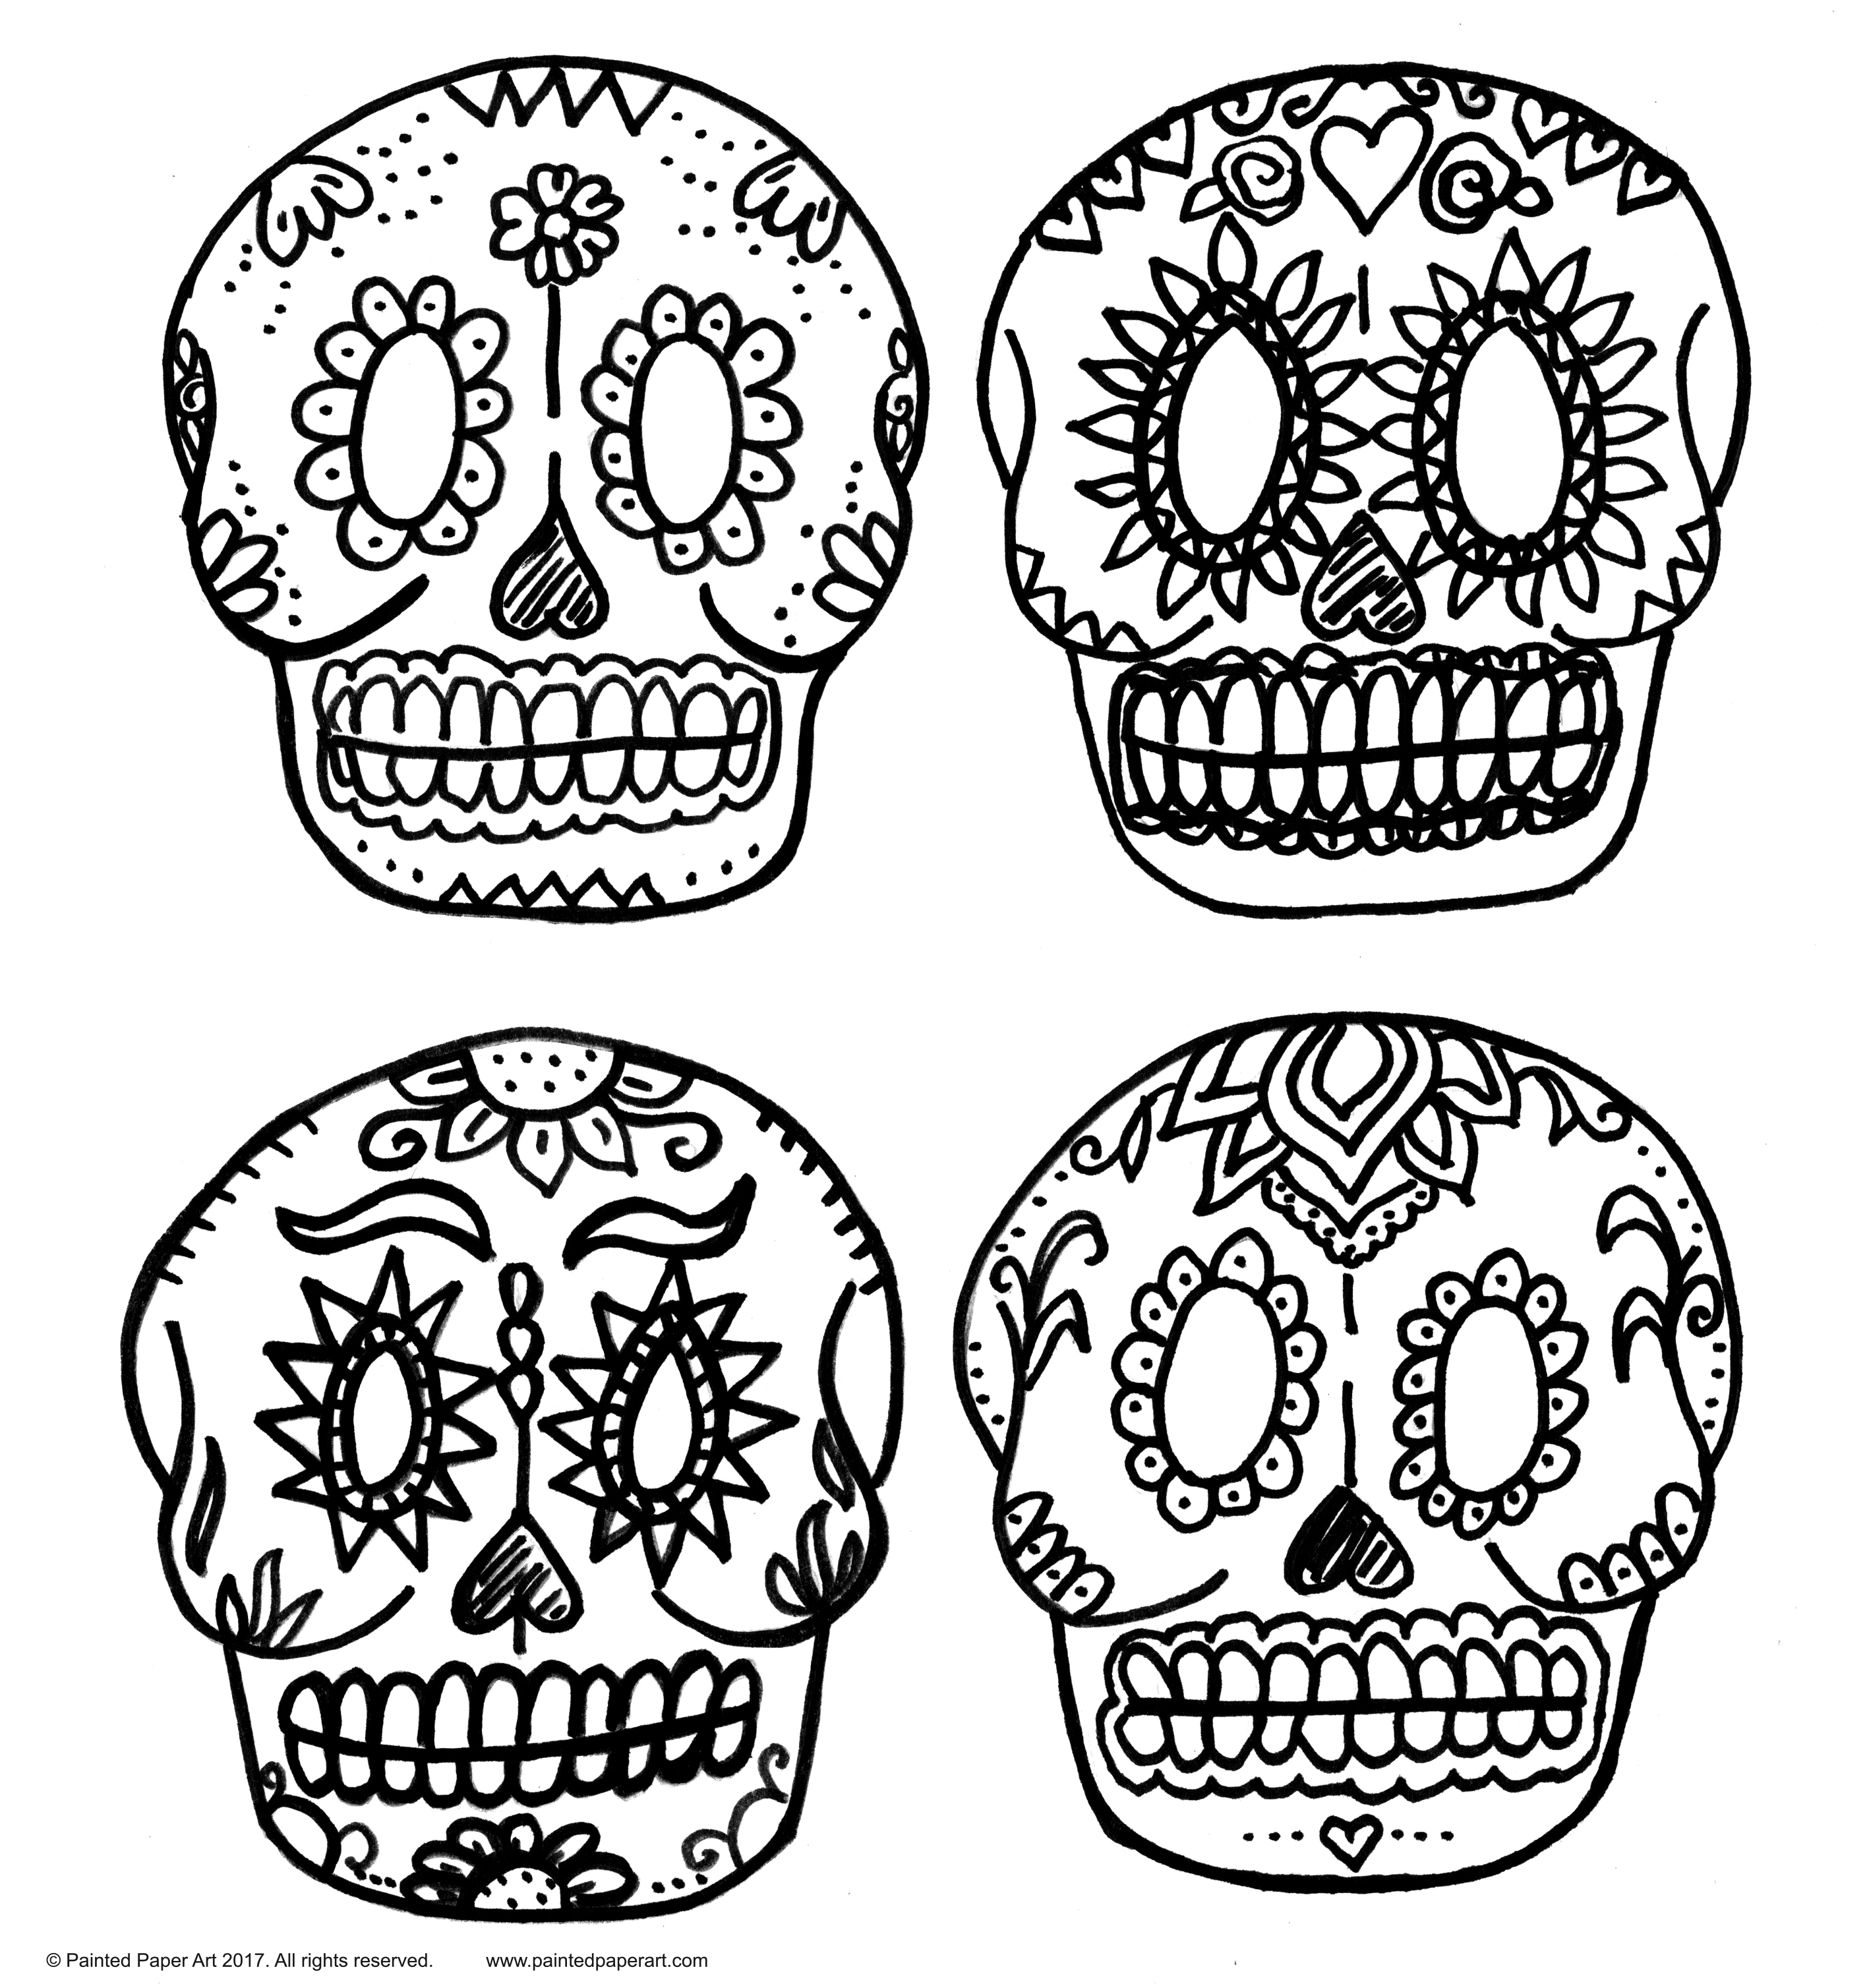 Dia de los muertos paper sugar skulls â painted paper art